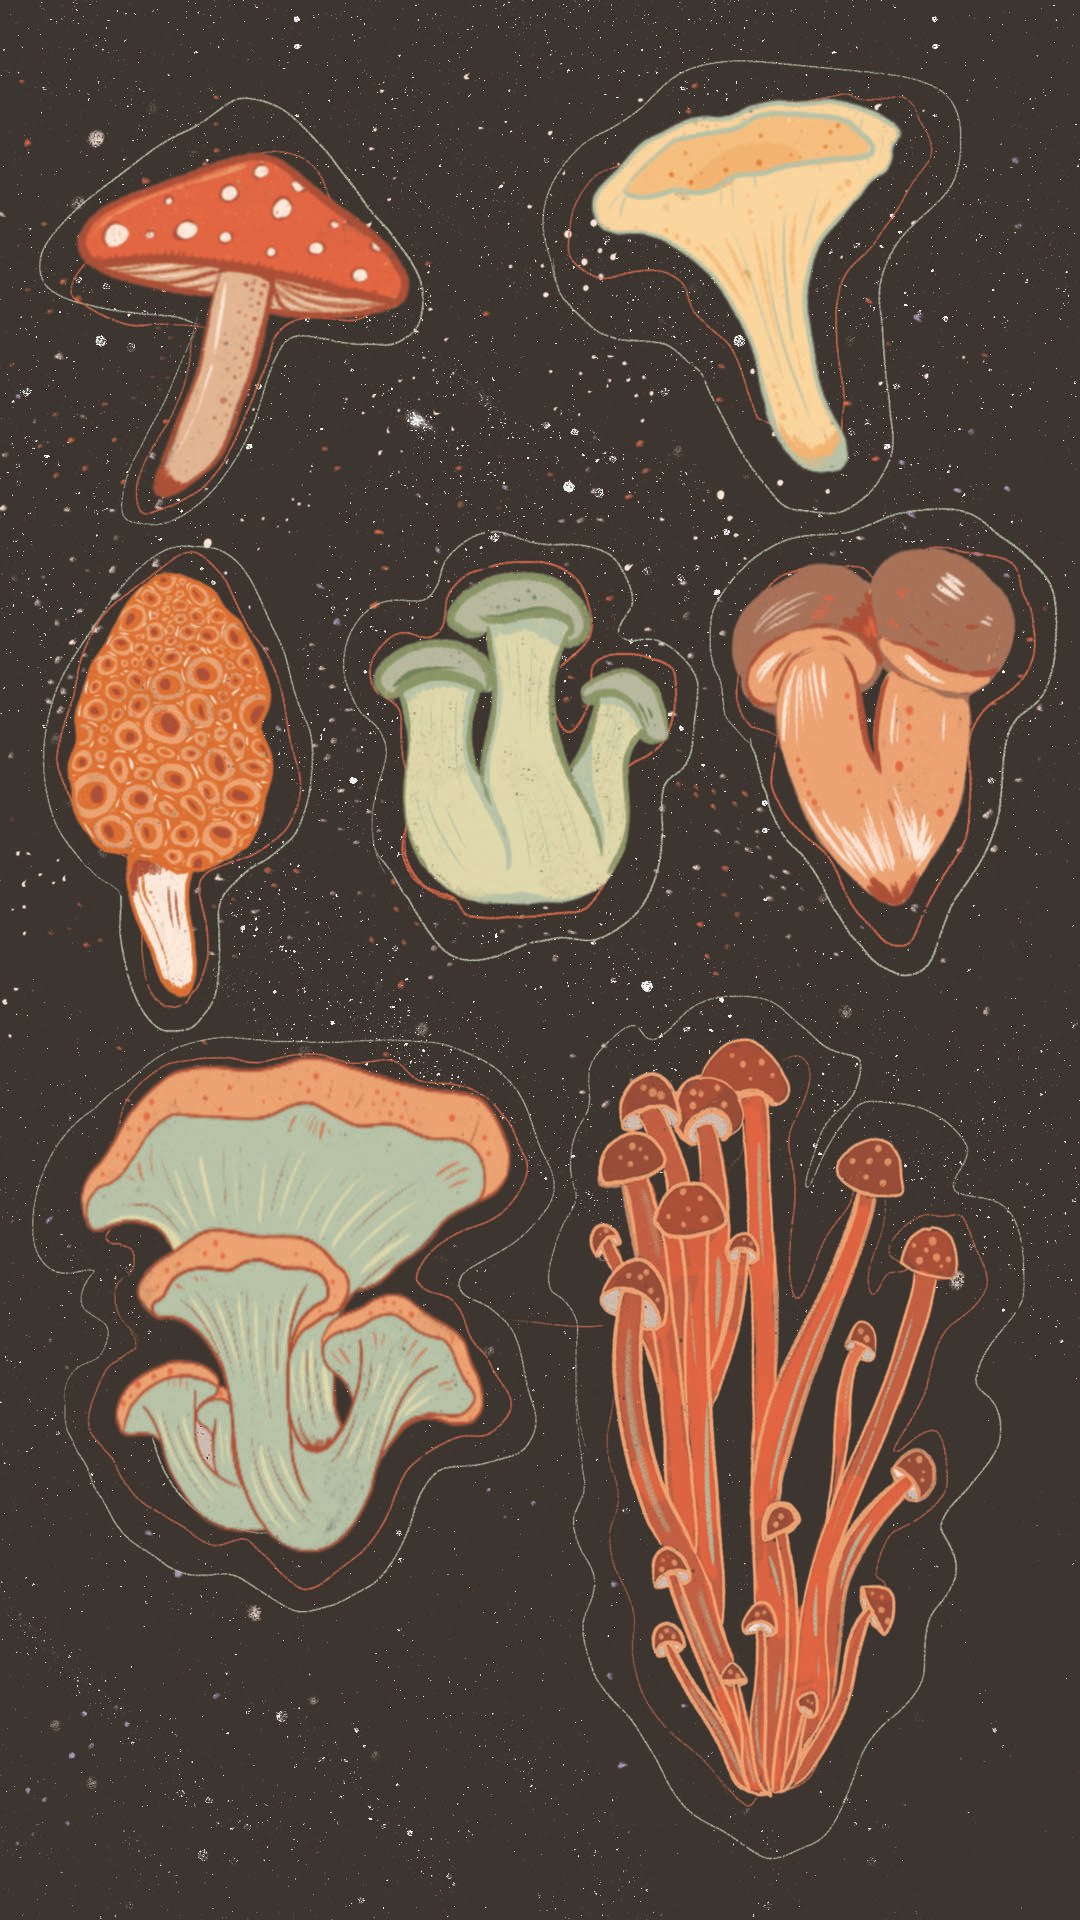 Mushroom wallpaper Cute aesthetic  Mushroom wallpaper Phone wallpaper  patterns Phone wallpaper design